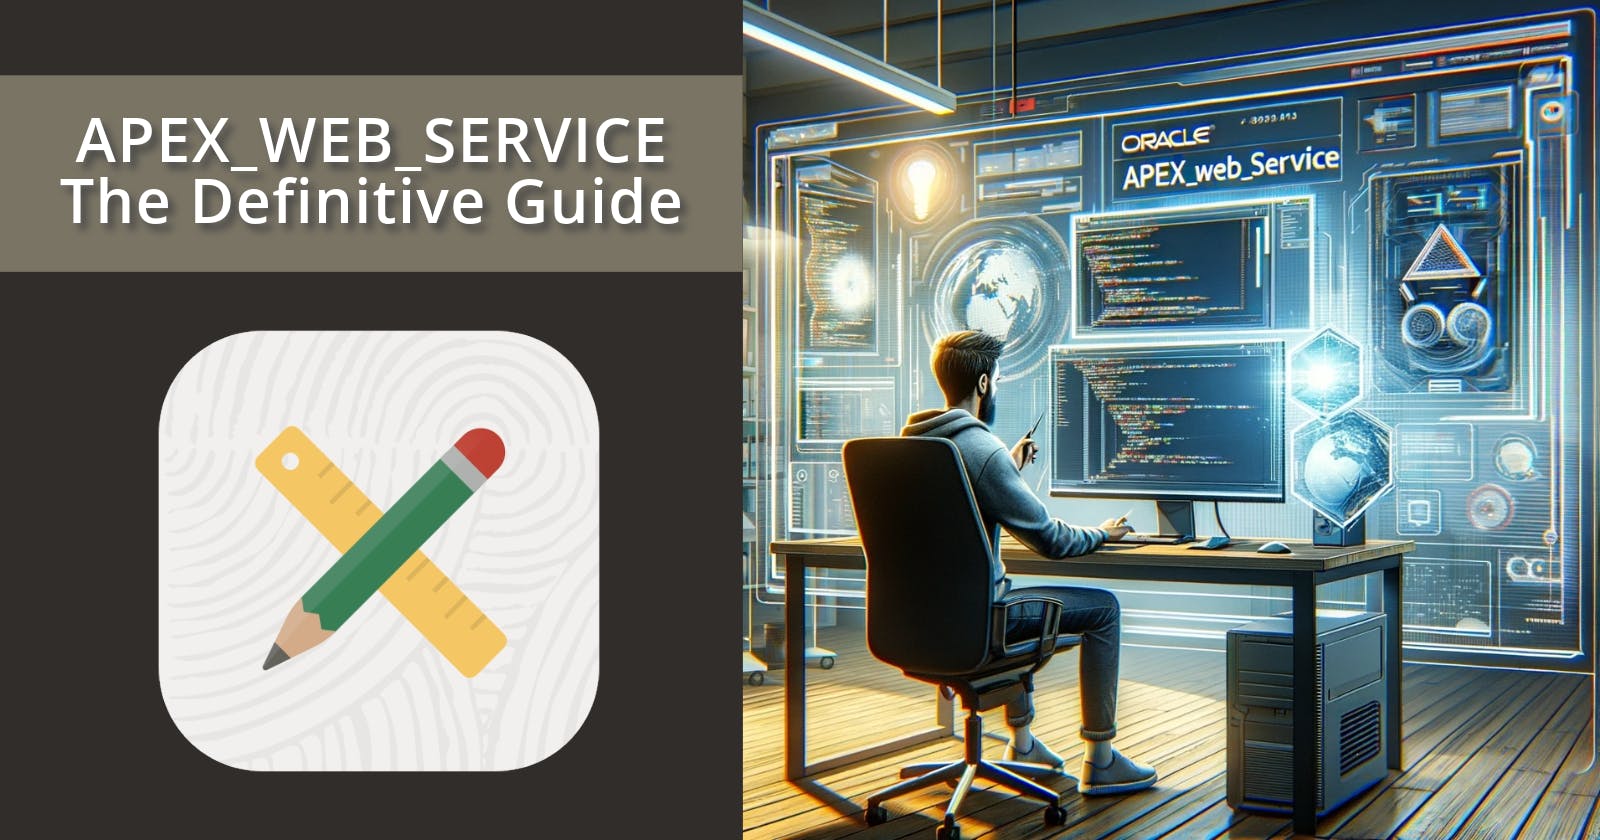 APEX_WEB_SERVICE The Definitive Guide